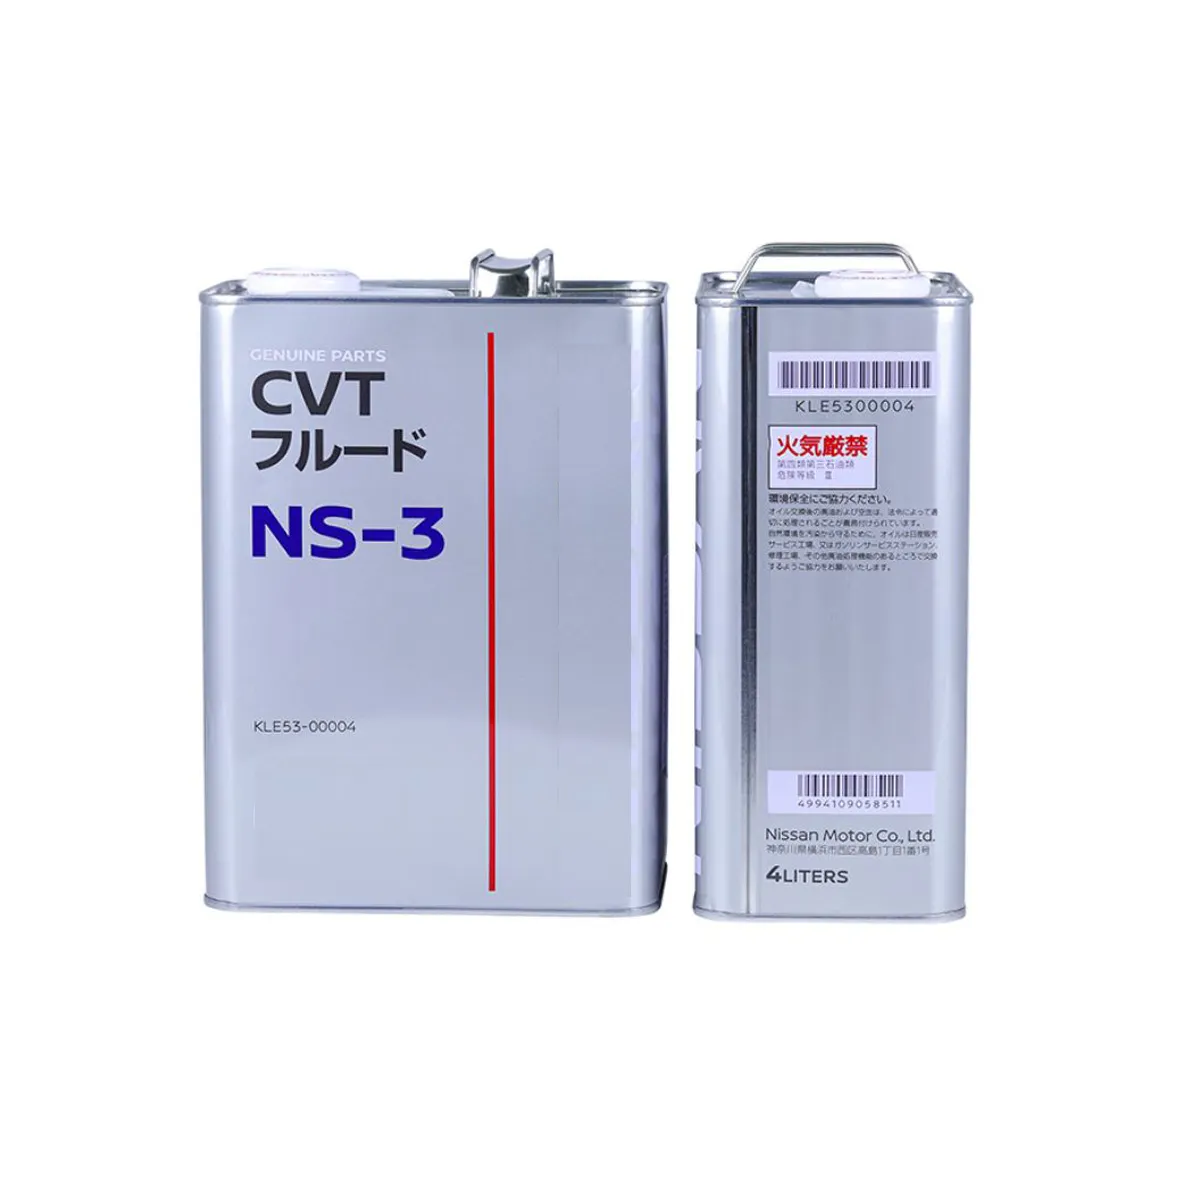 Высокое качество NISSAN бесступенчатая Трансмиссия CVT Трансмиссия жидкость NS-2 коробка передач масло